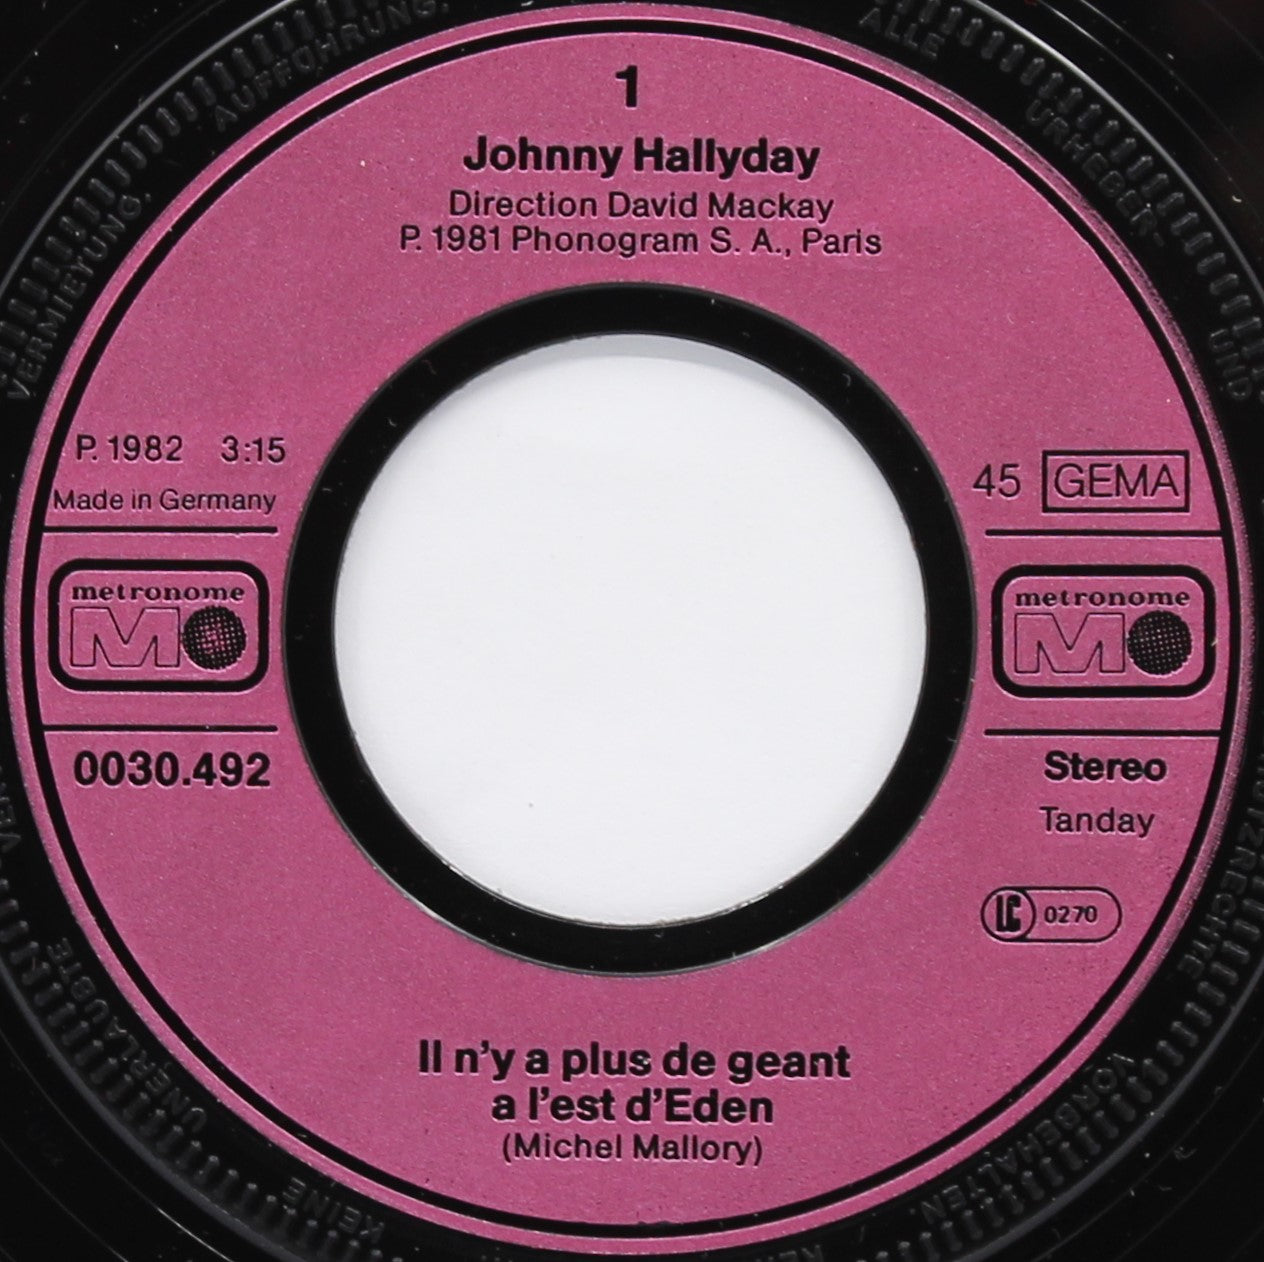 Johnny Hallyday - Les Plus Grands Succès - RSD 2020 (Vinyle)